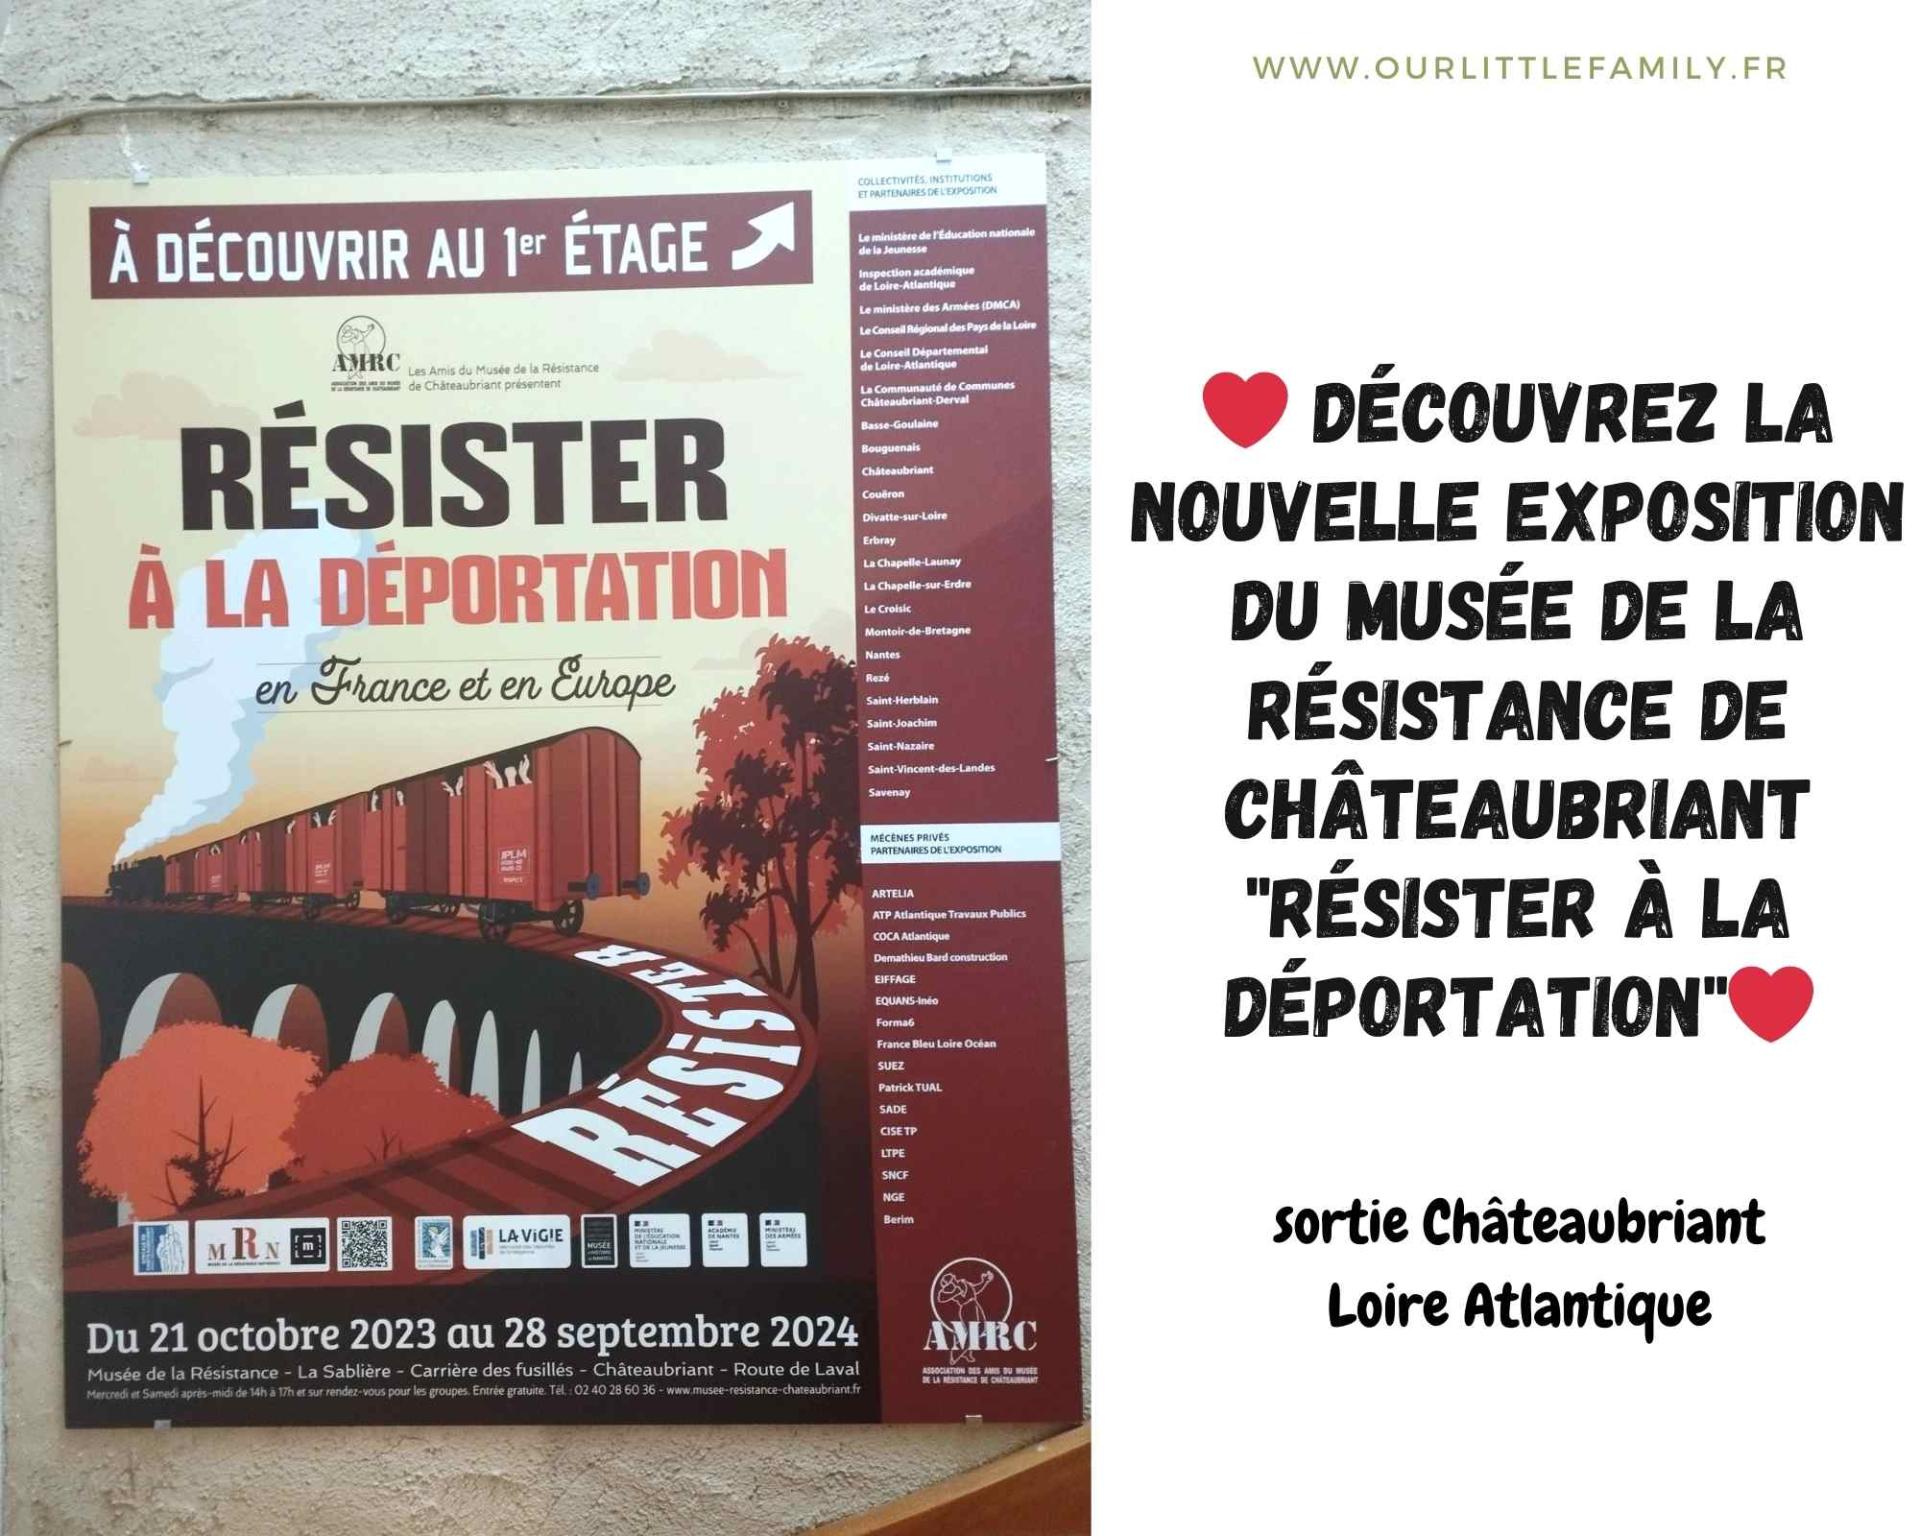 Decouvrez la nouvelle exposition du musee de la resistance de chateaubriant resister a la deportation